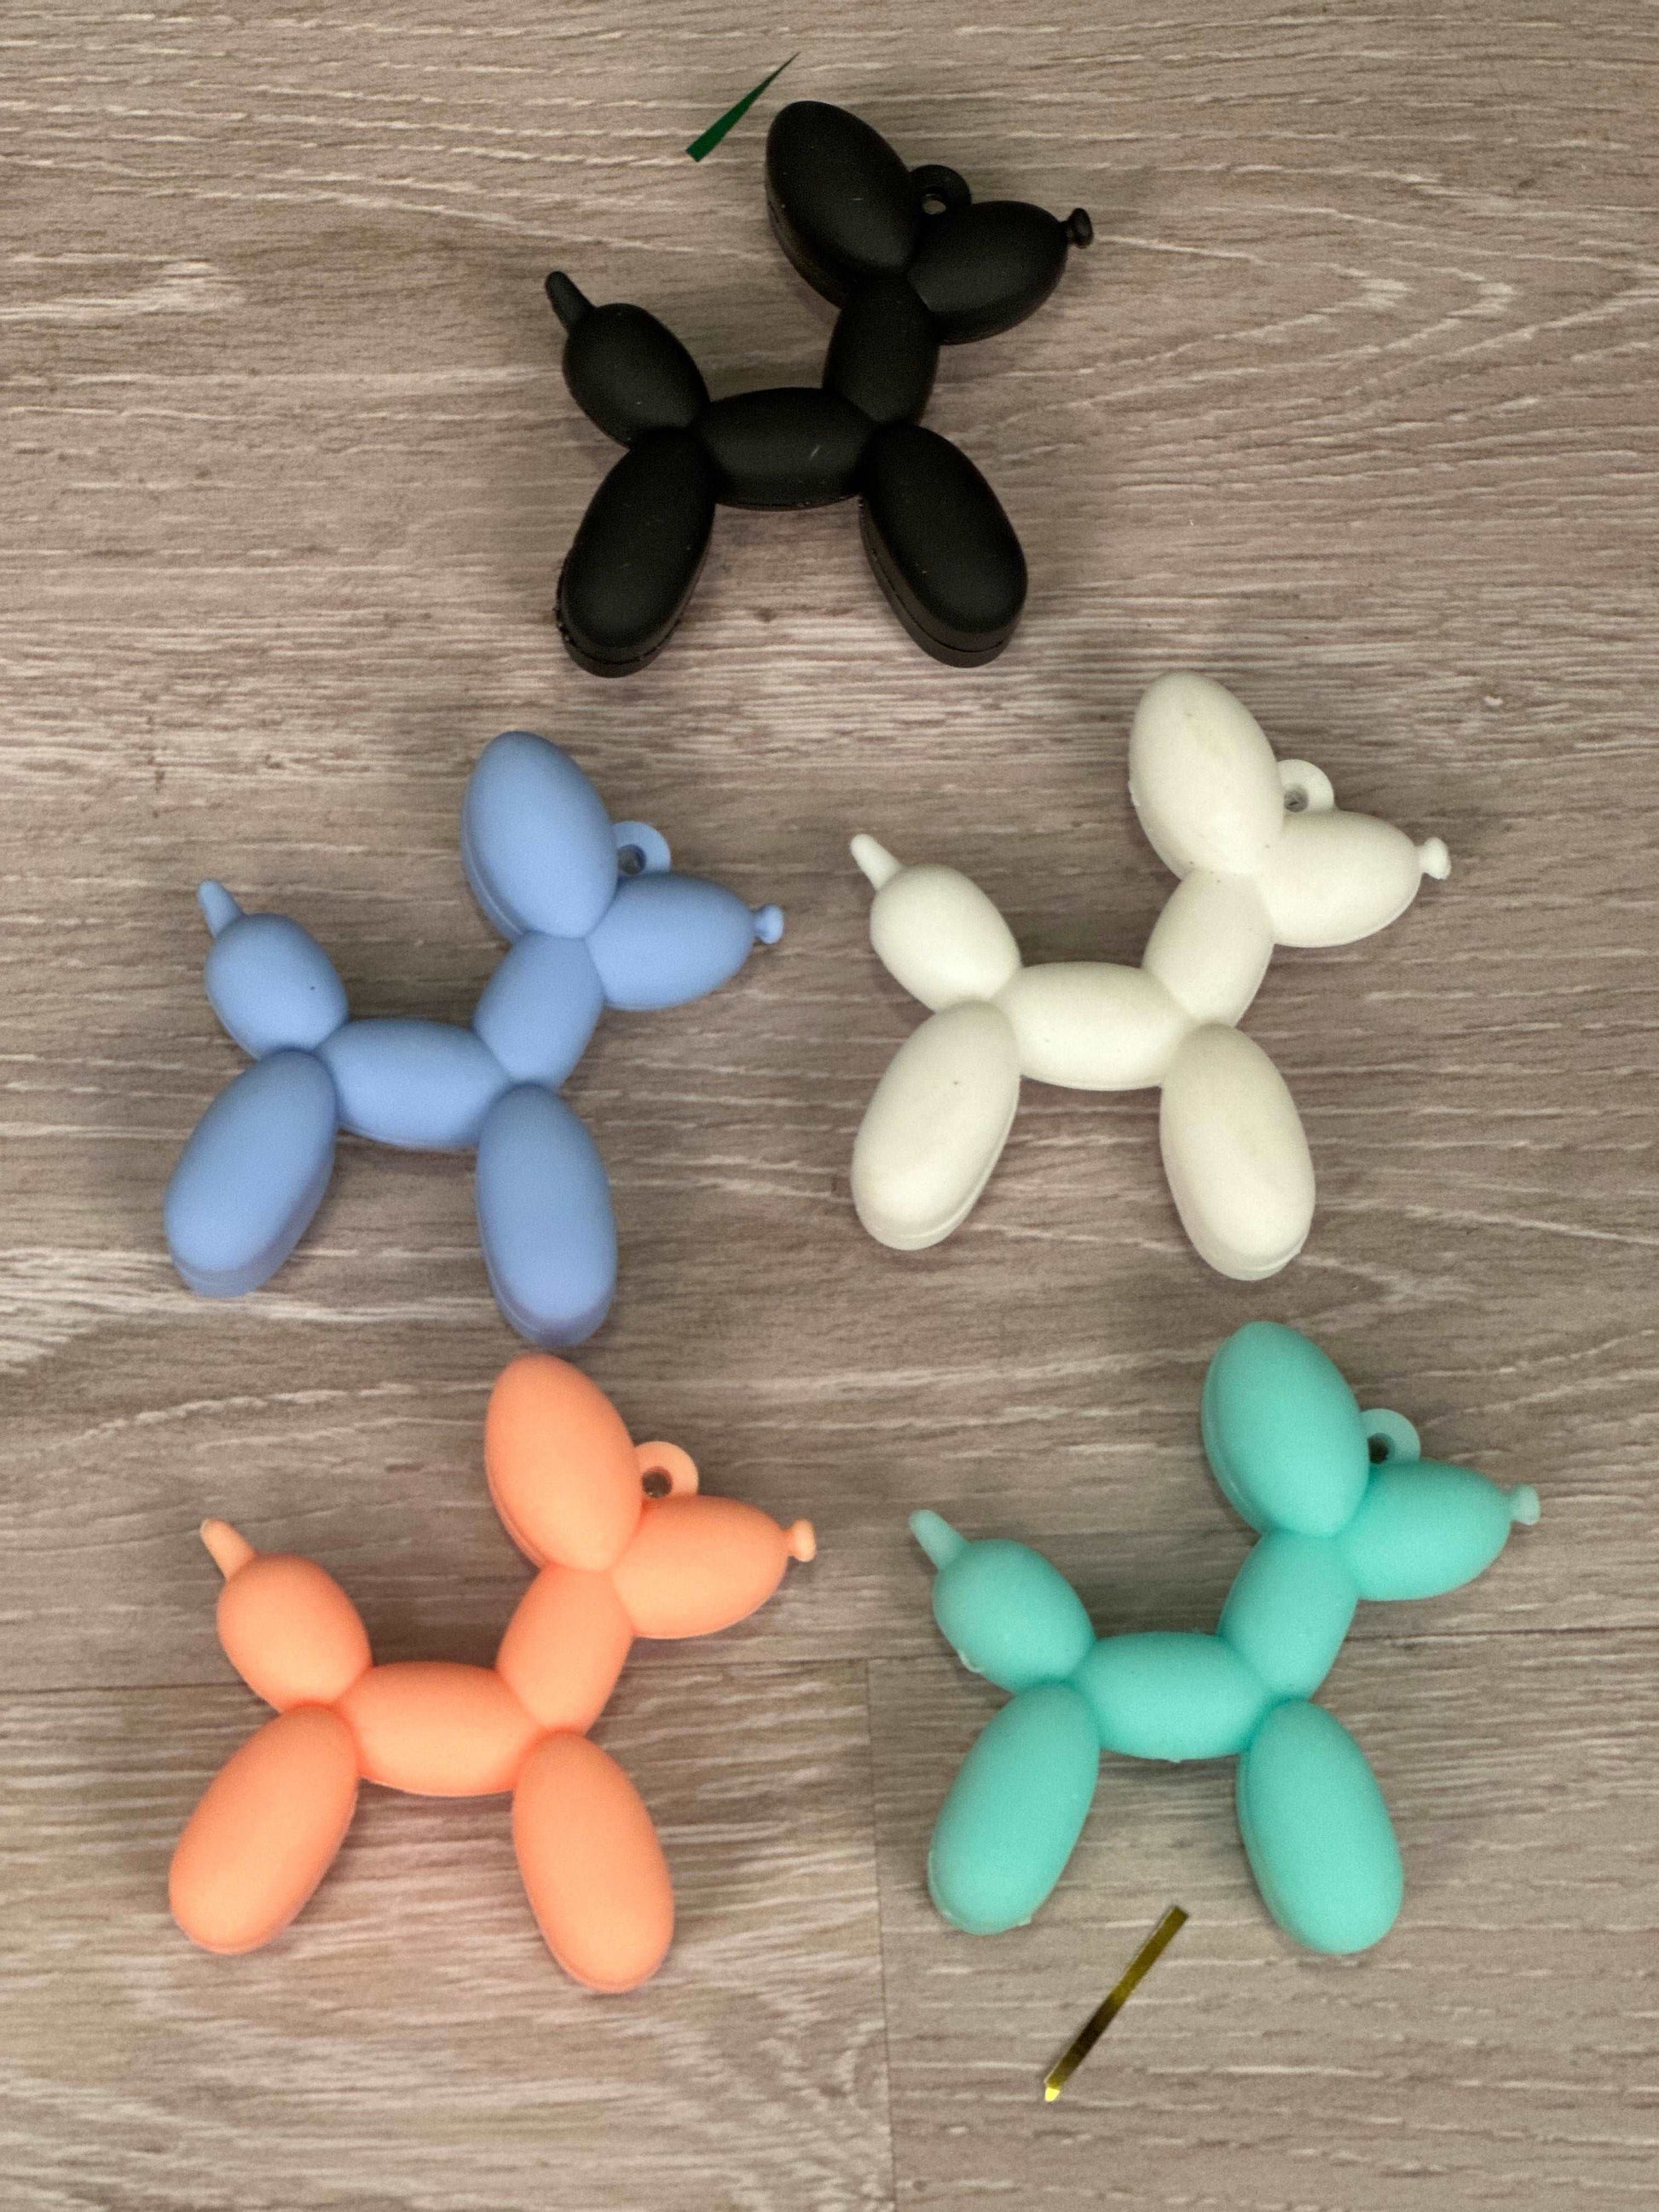 Mini Balloon Dogs